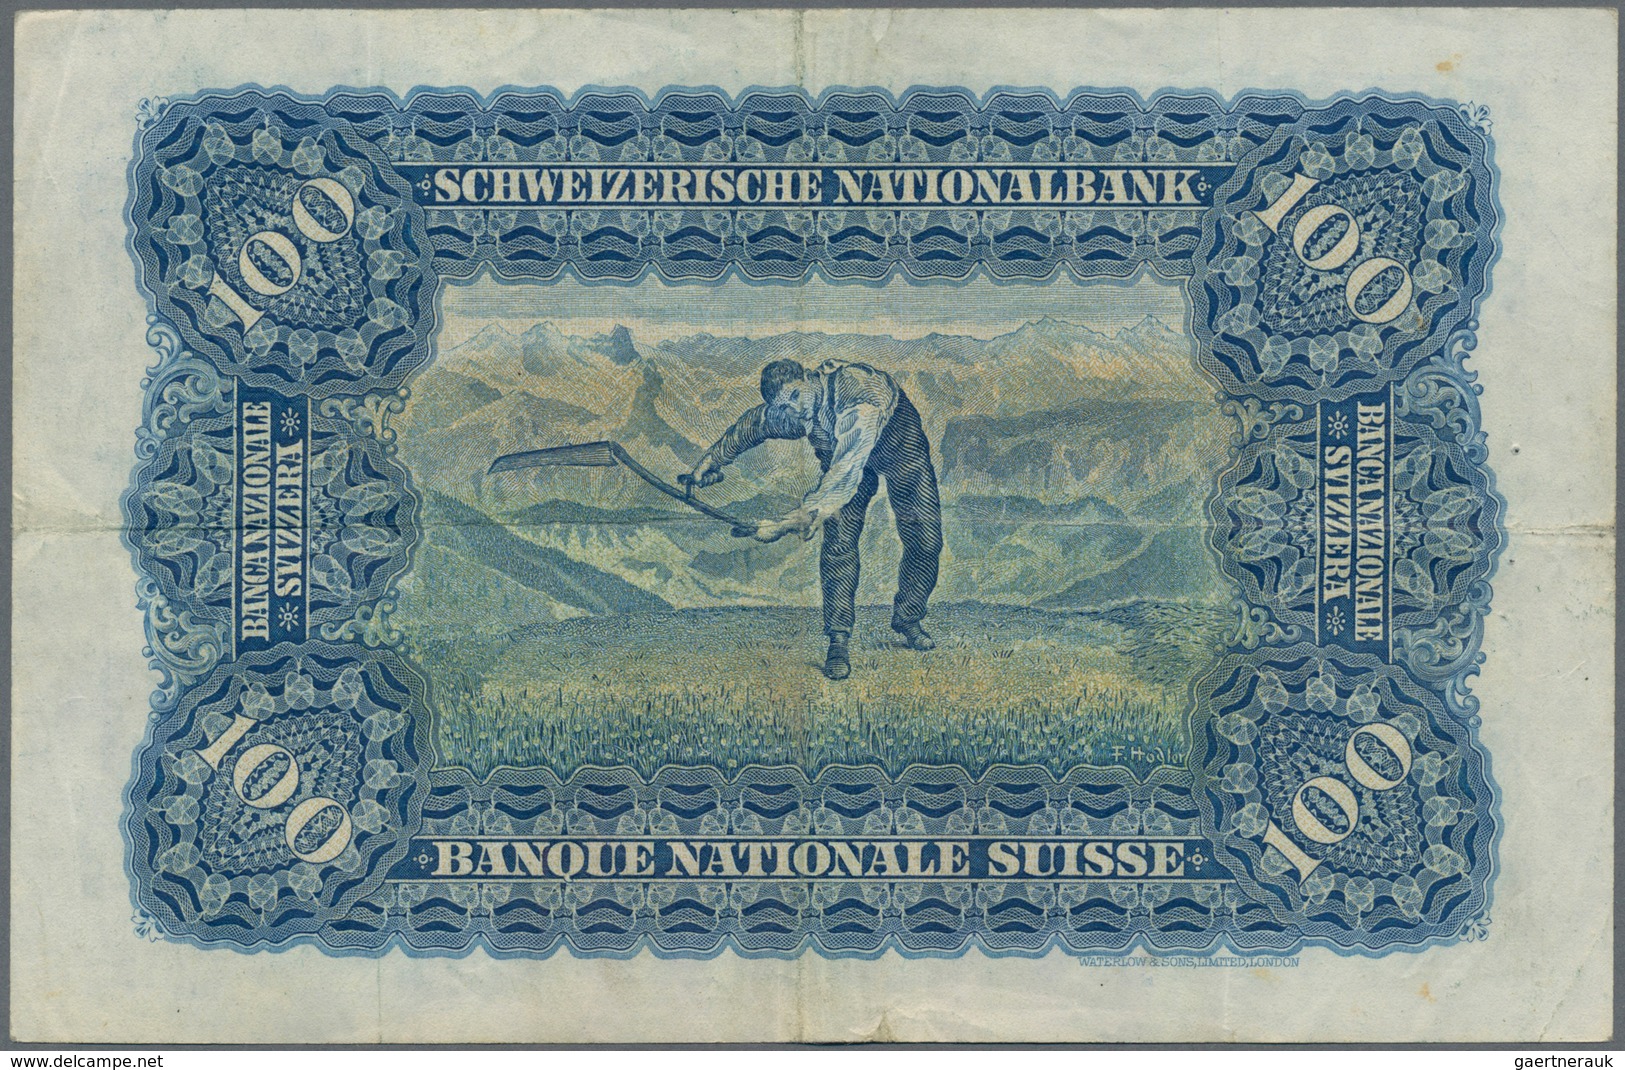 Switzerland / Schweiz: Schweizerische Nationalbank lot with 4 banknotes 100 Franken 1947 with signat